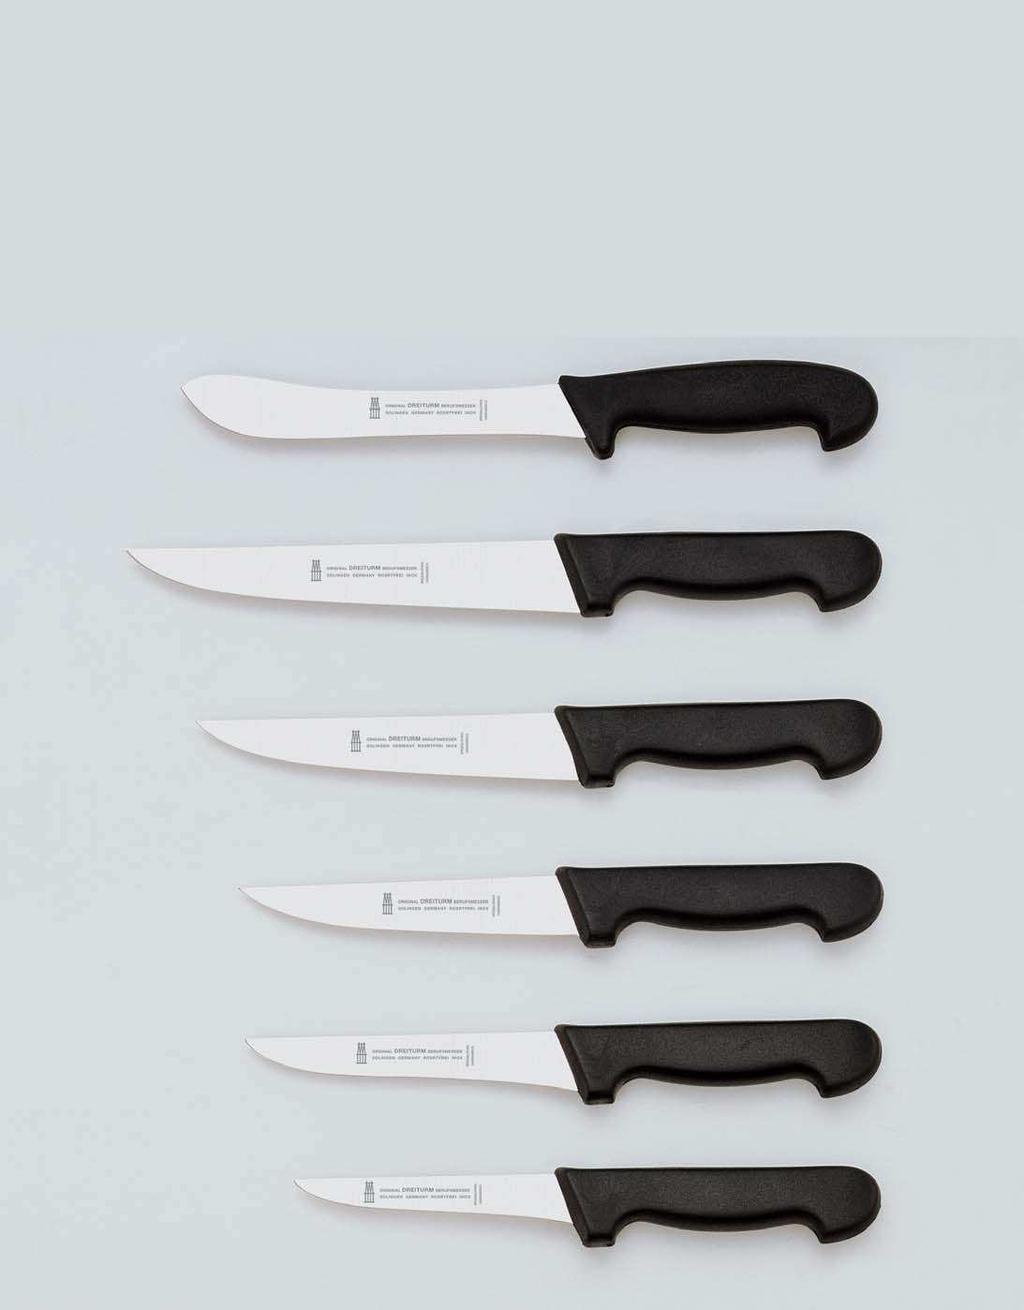 Berufsmesser spülmaschinenfest Couteaux de travail résistantes au lave-vaisselle Commercial knives dishwasher safe Cuchillos de trabajo